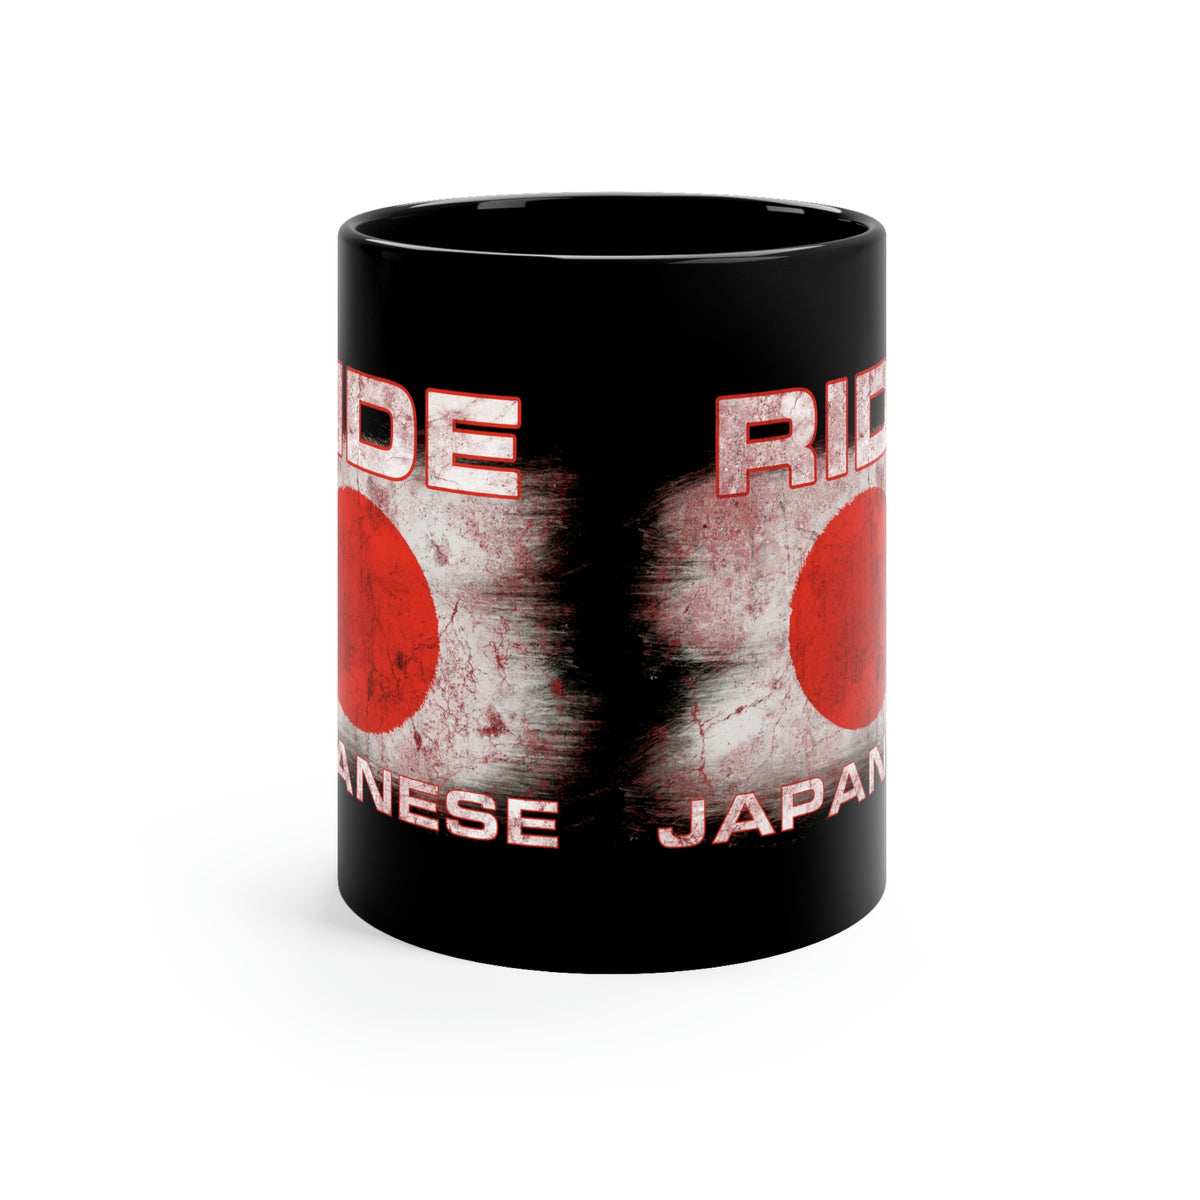 Ride Japanese - Black mug 11oz